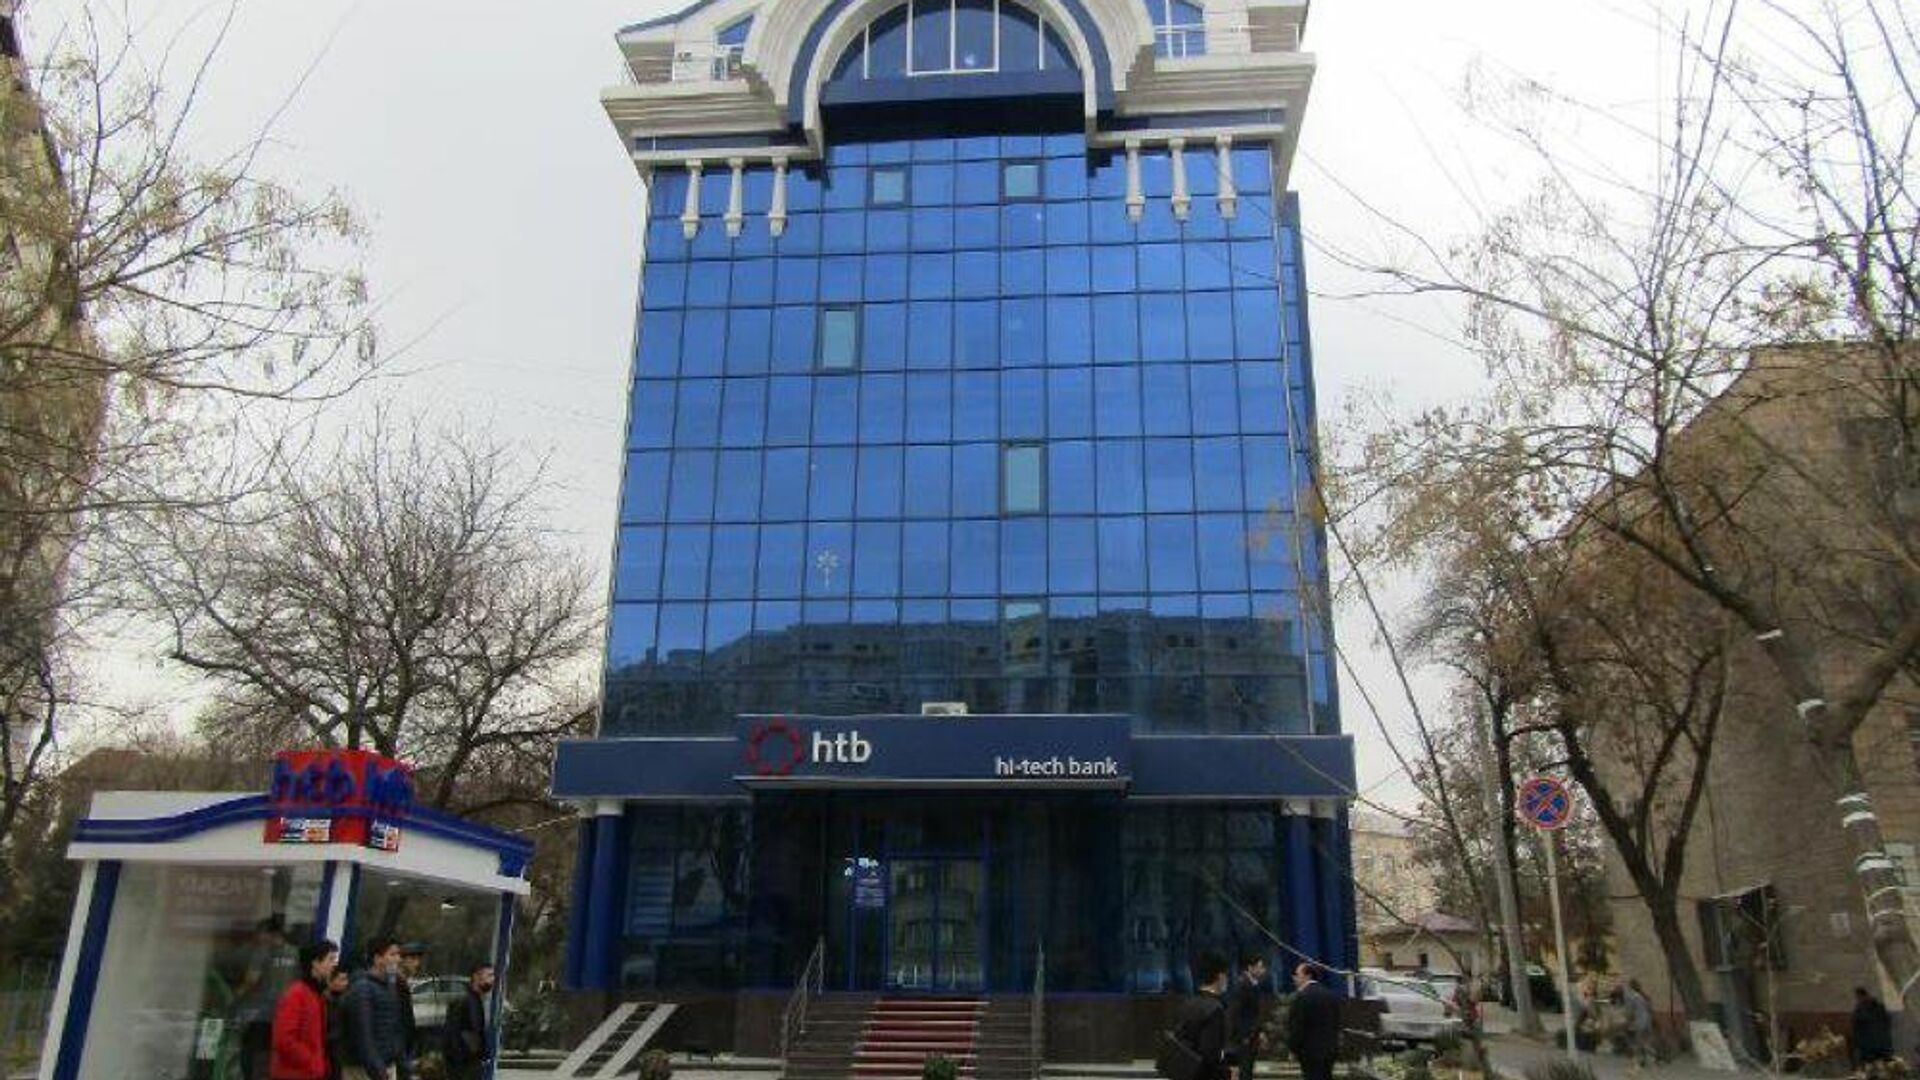 Здание, где находится офис Hi-Tech Bank, выставили на аукцион - Sputnik Узбекистан, 1920, 01.04.2021